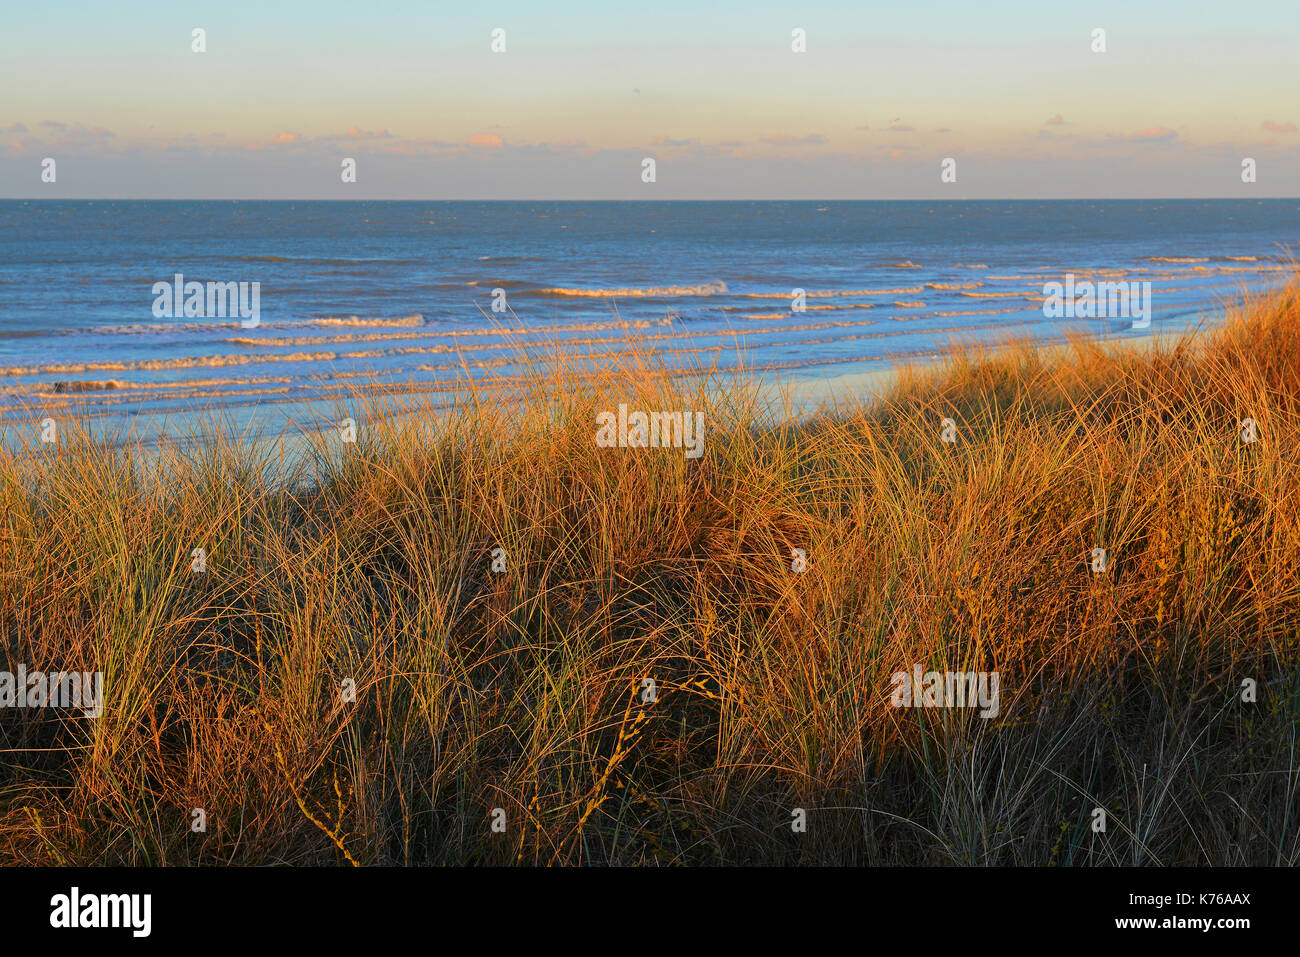 El paisaje de las dunas de arena de Ostende con dune hierba iluminada al atardecer con el Mar del Norte, en el fondo, en el oeste de Flandes, Bélgica. Foto de stock